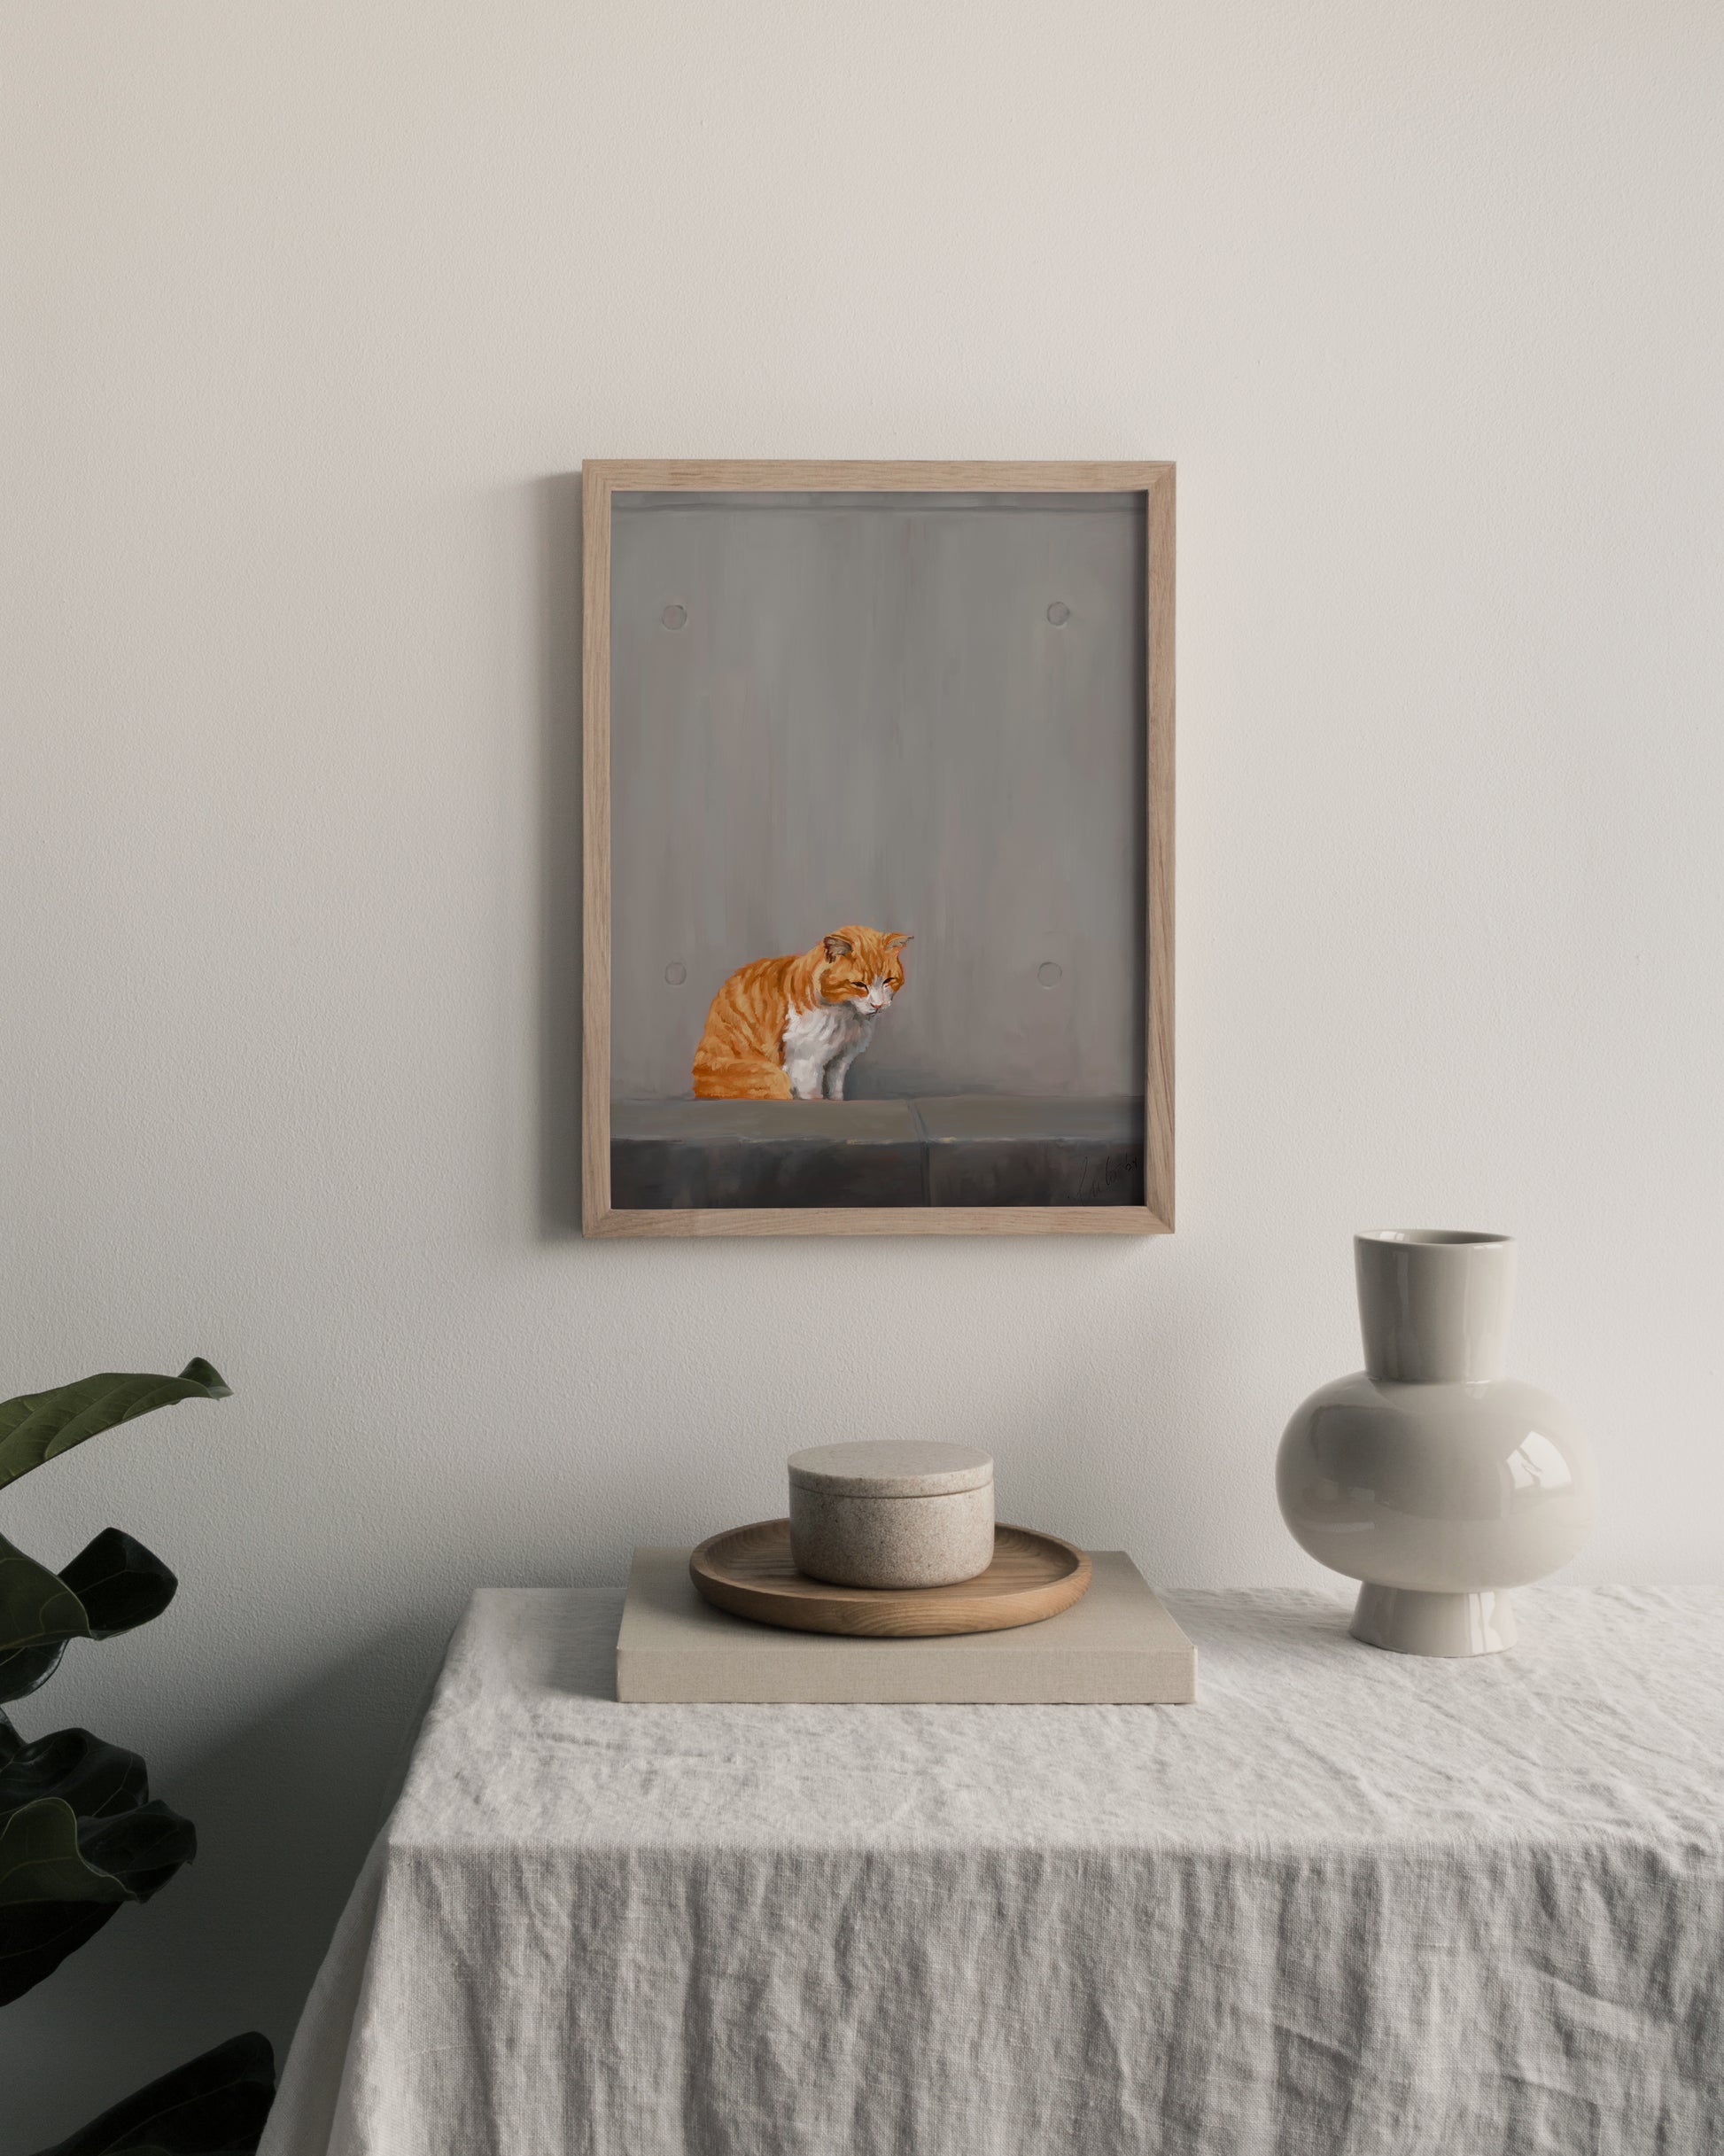 "Fukuoka no Neko" by Catherine Hébert - Orange Tabby Cat Painting Art Print